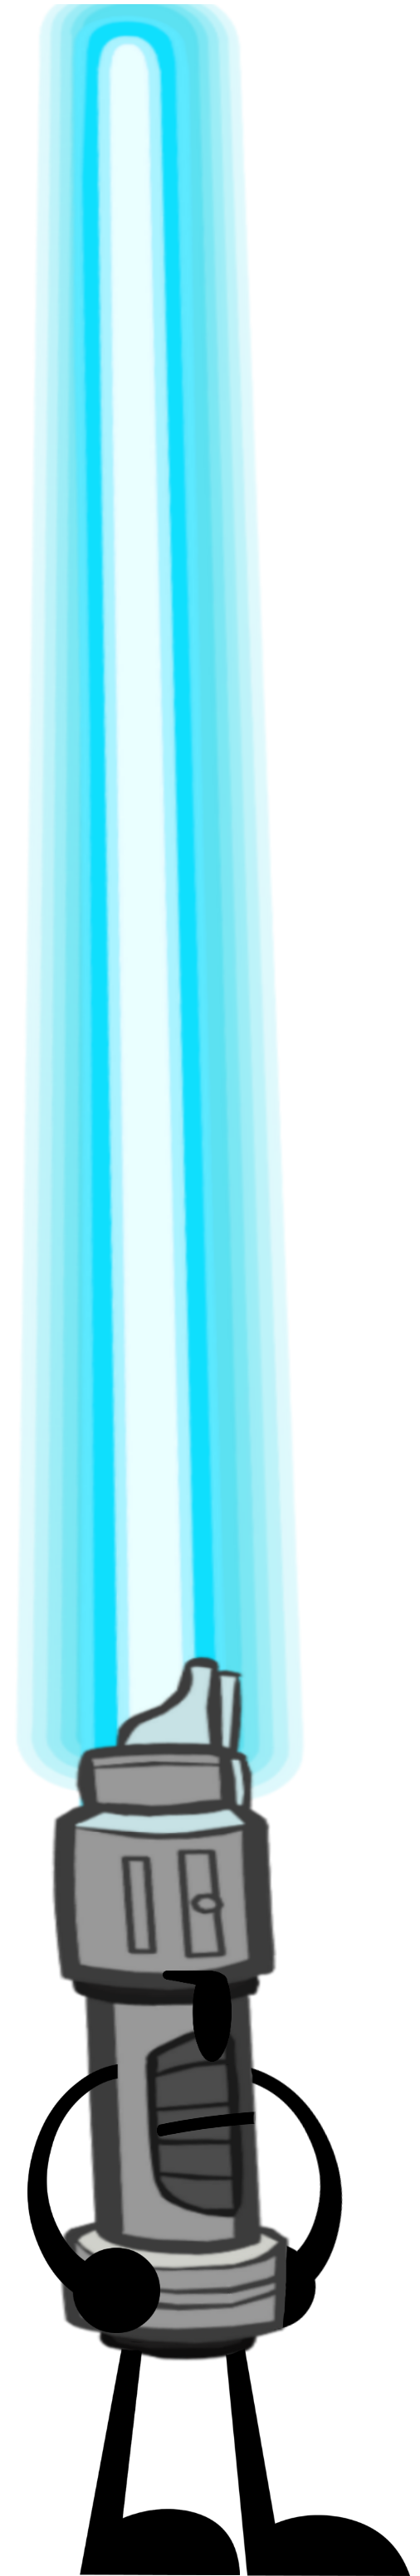 Blue Lightsaber PNG Image